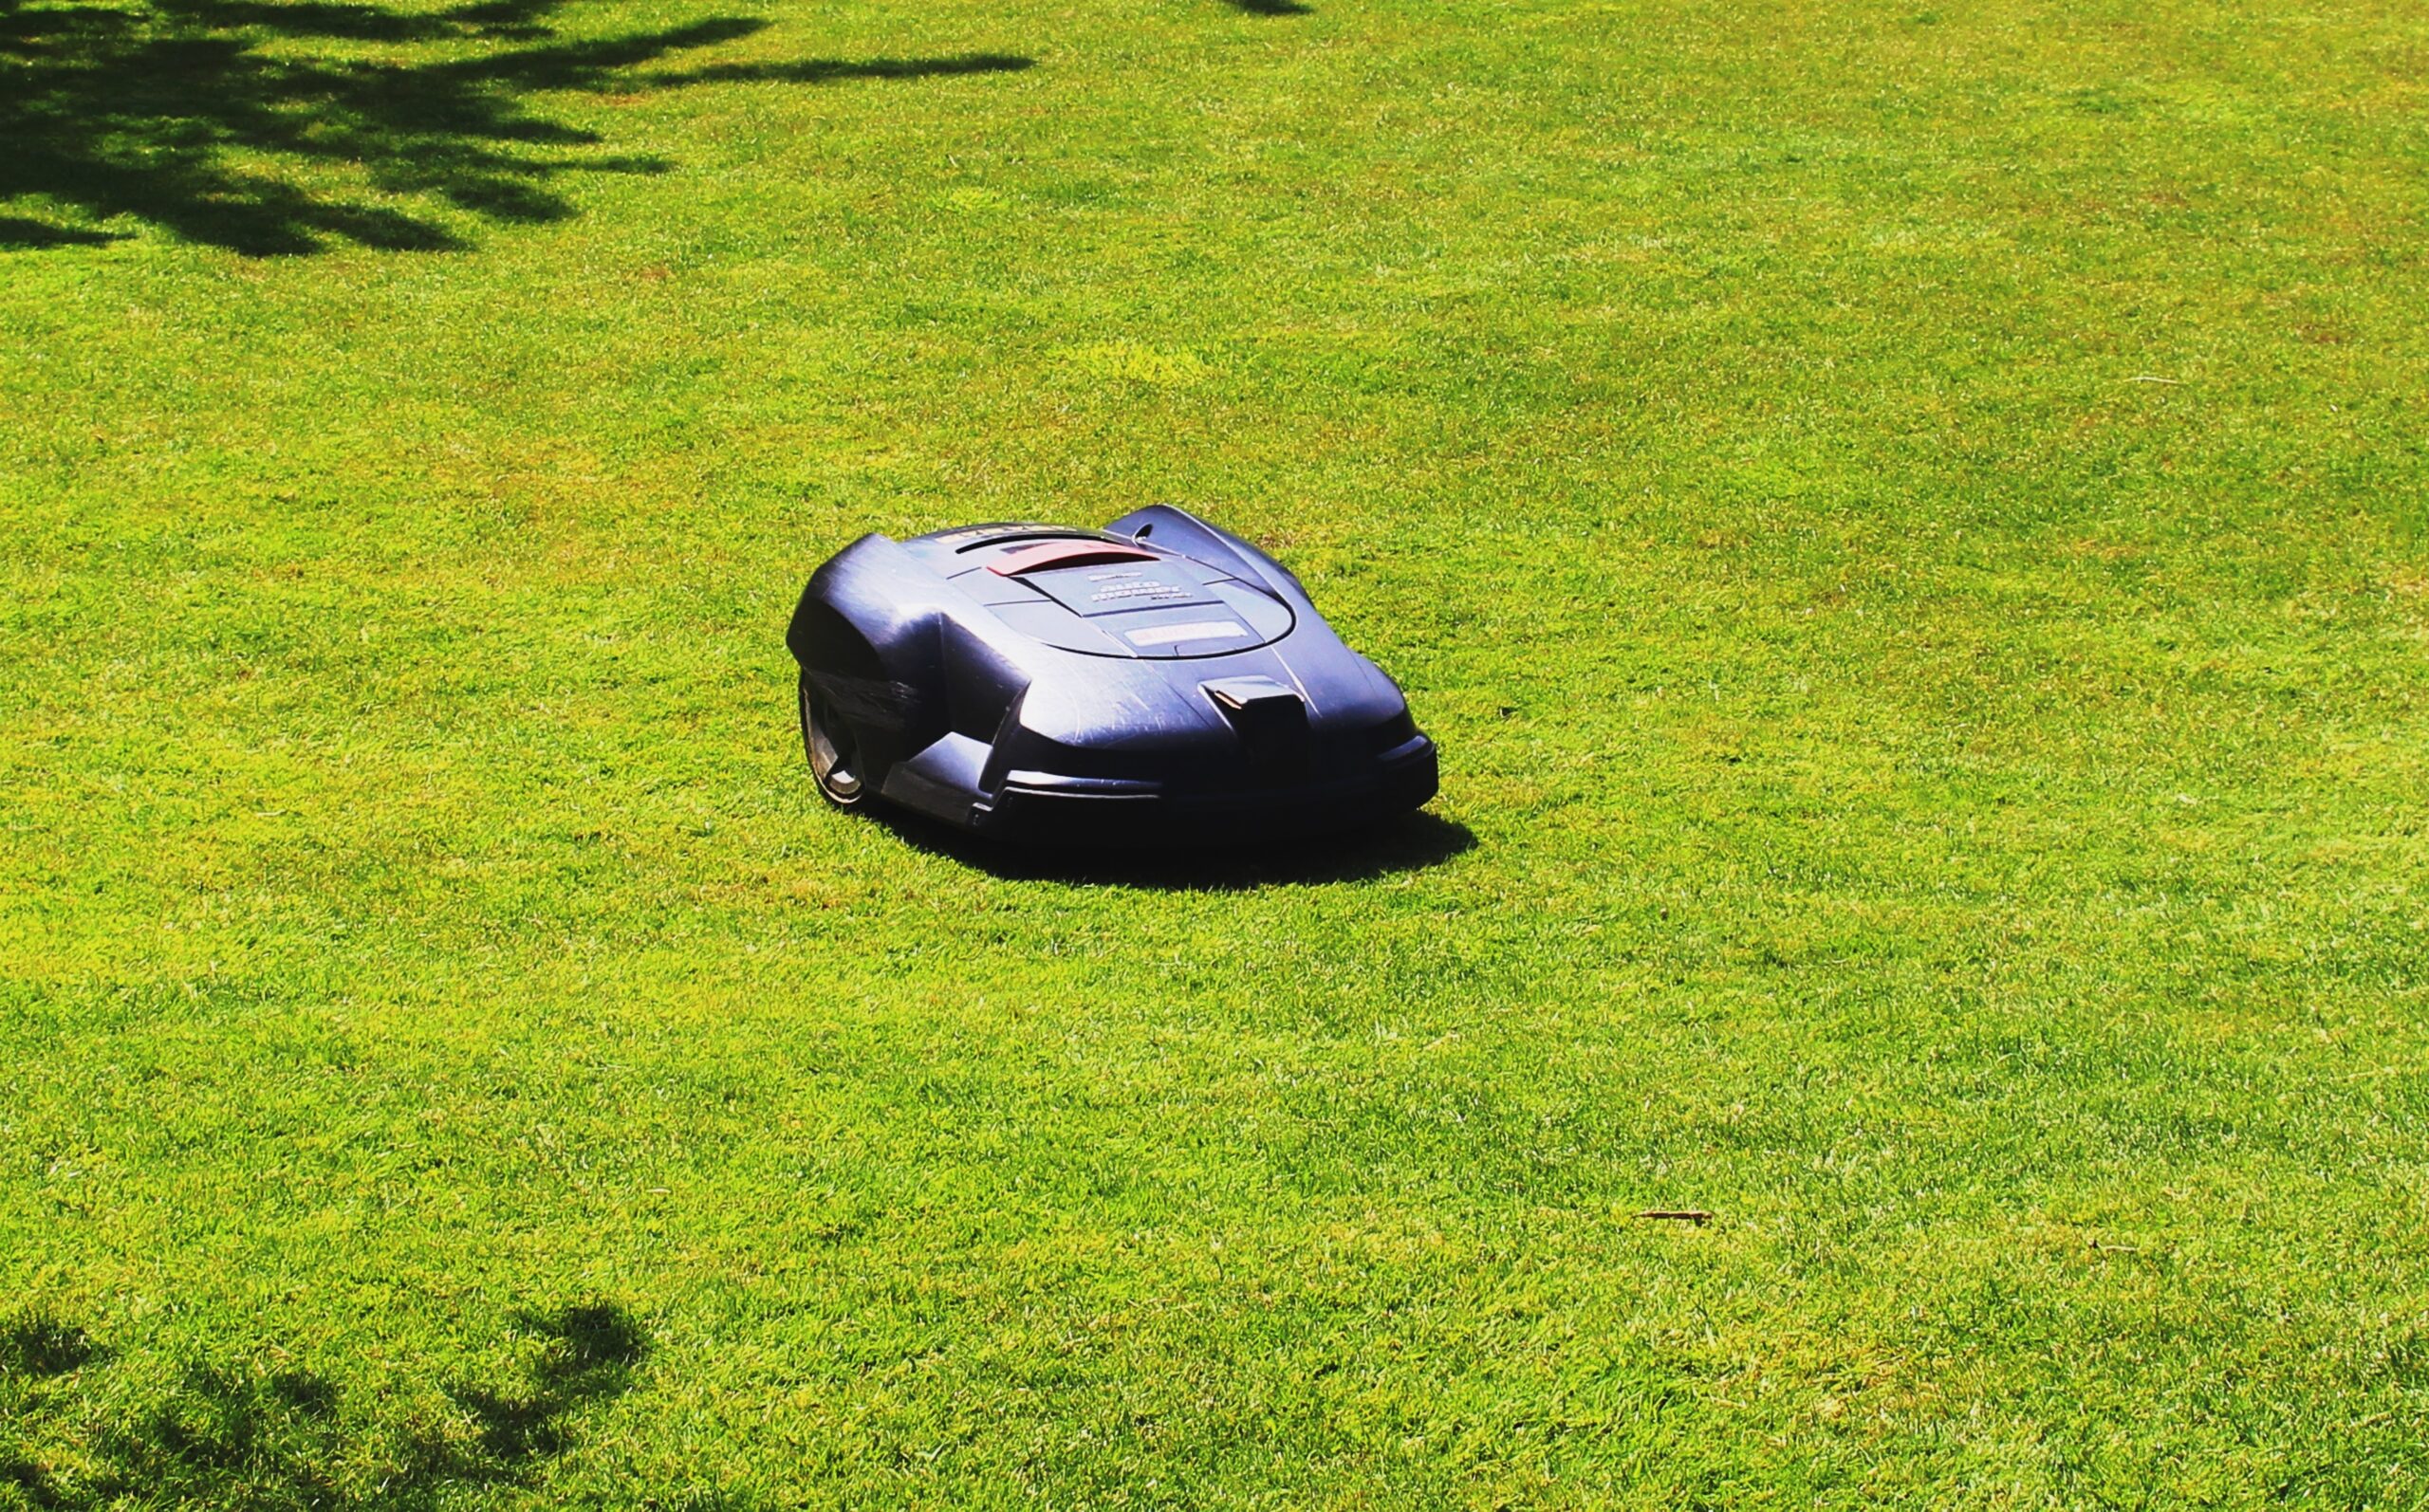 Abri de robot tondeuse : La solution idéale pour un jardin parfait